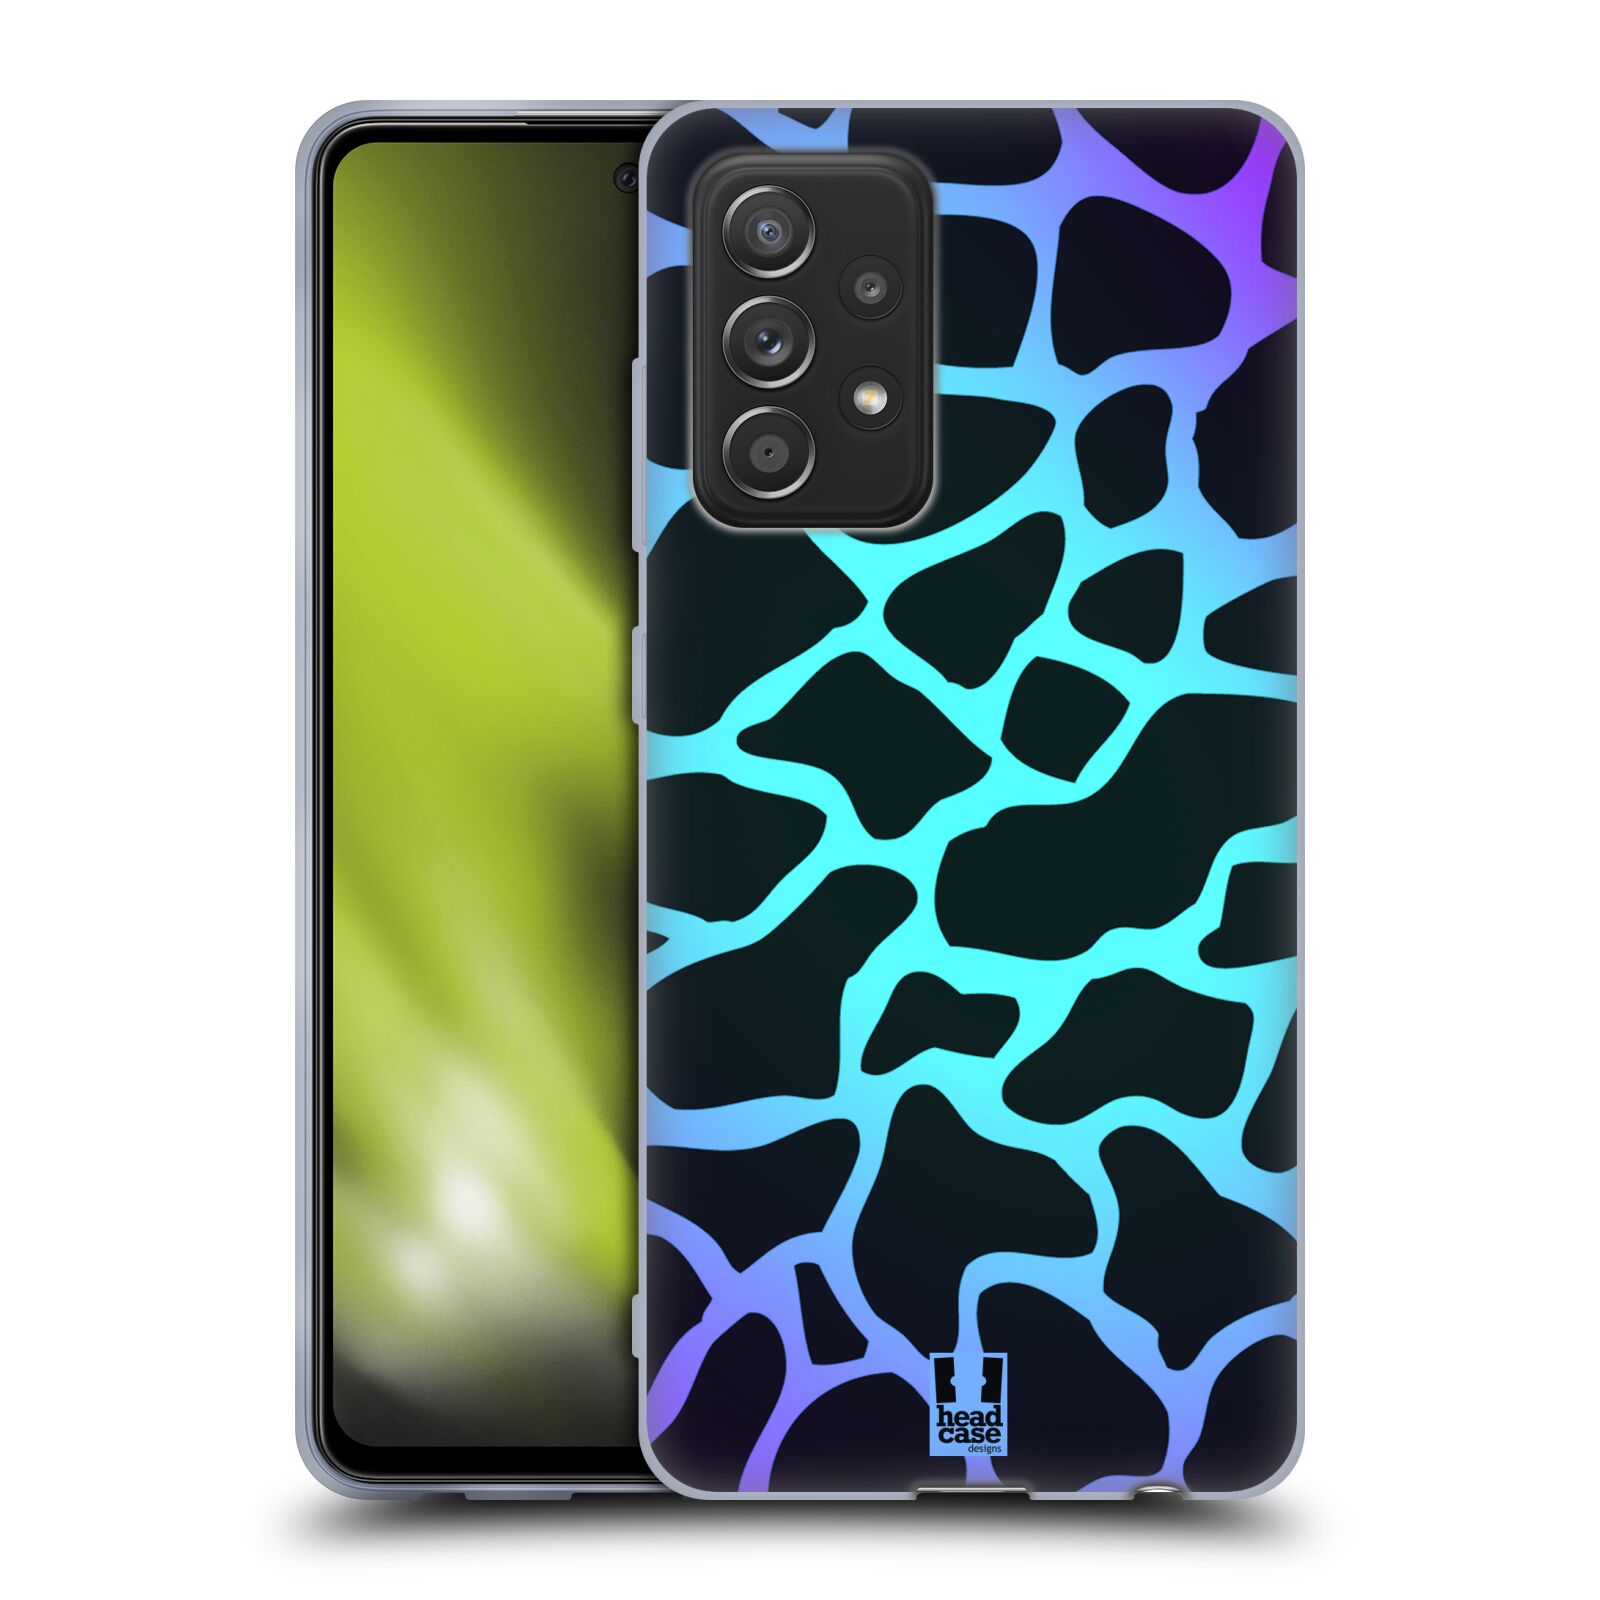 Plastový obal HEAD CASE na mobil Samsung Galaxy A52 / A52 5G / A52s 5G vzor Divočina zvíře tyrkysová žirafa magický vzor